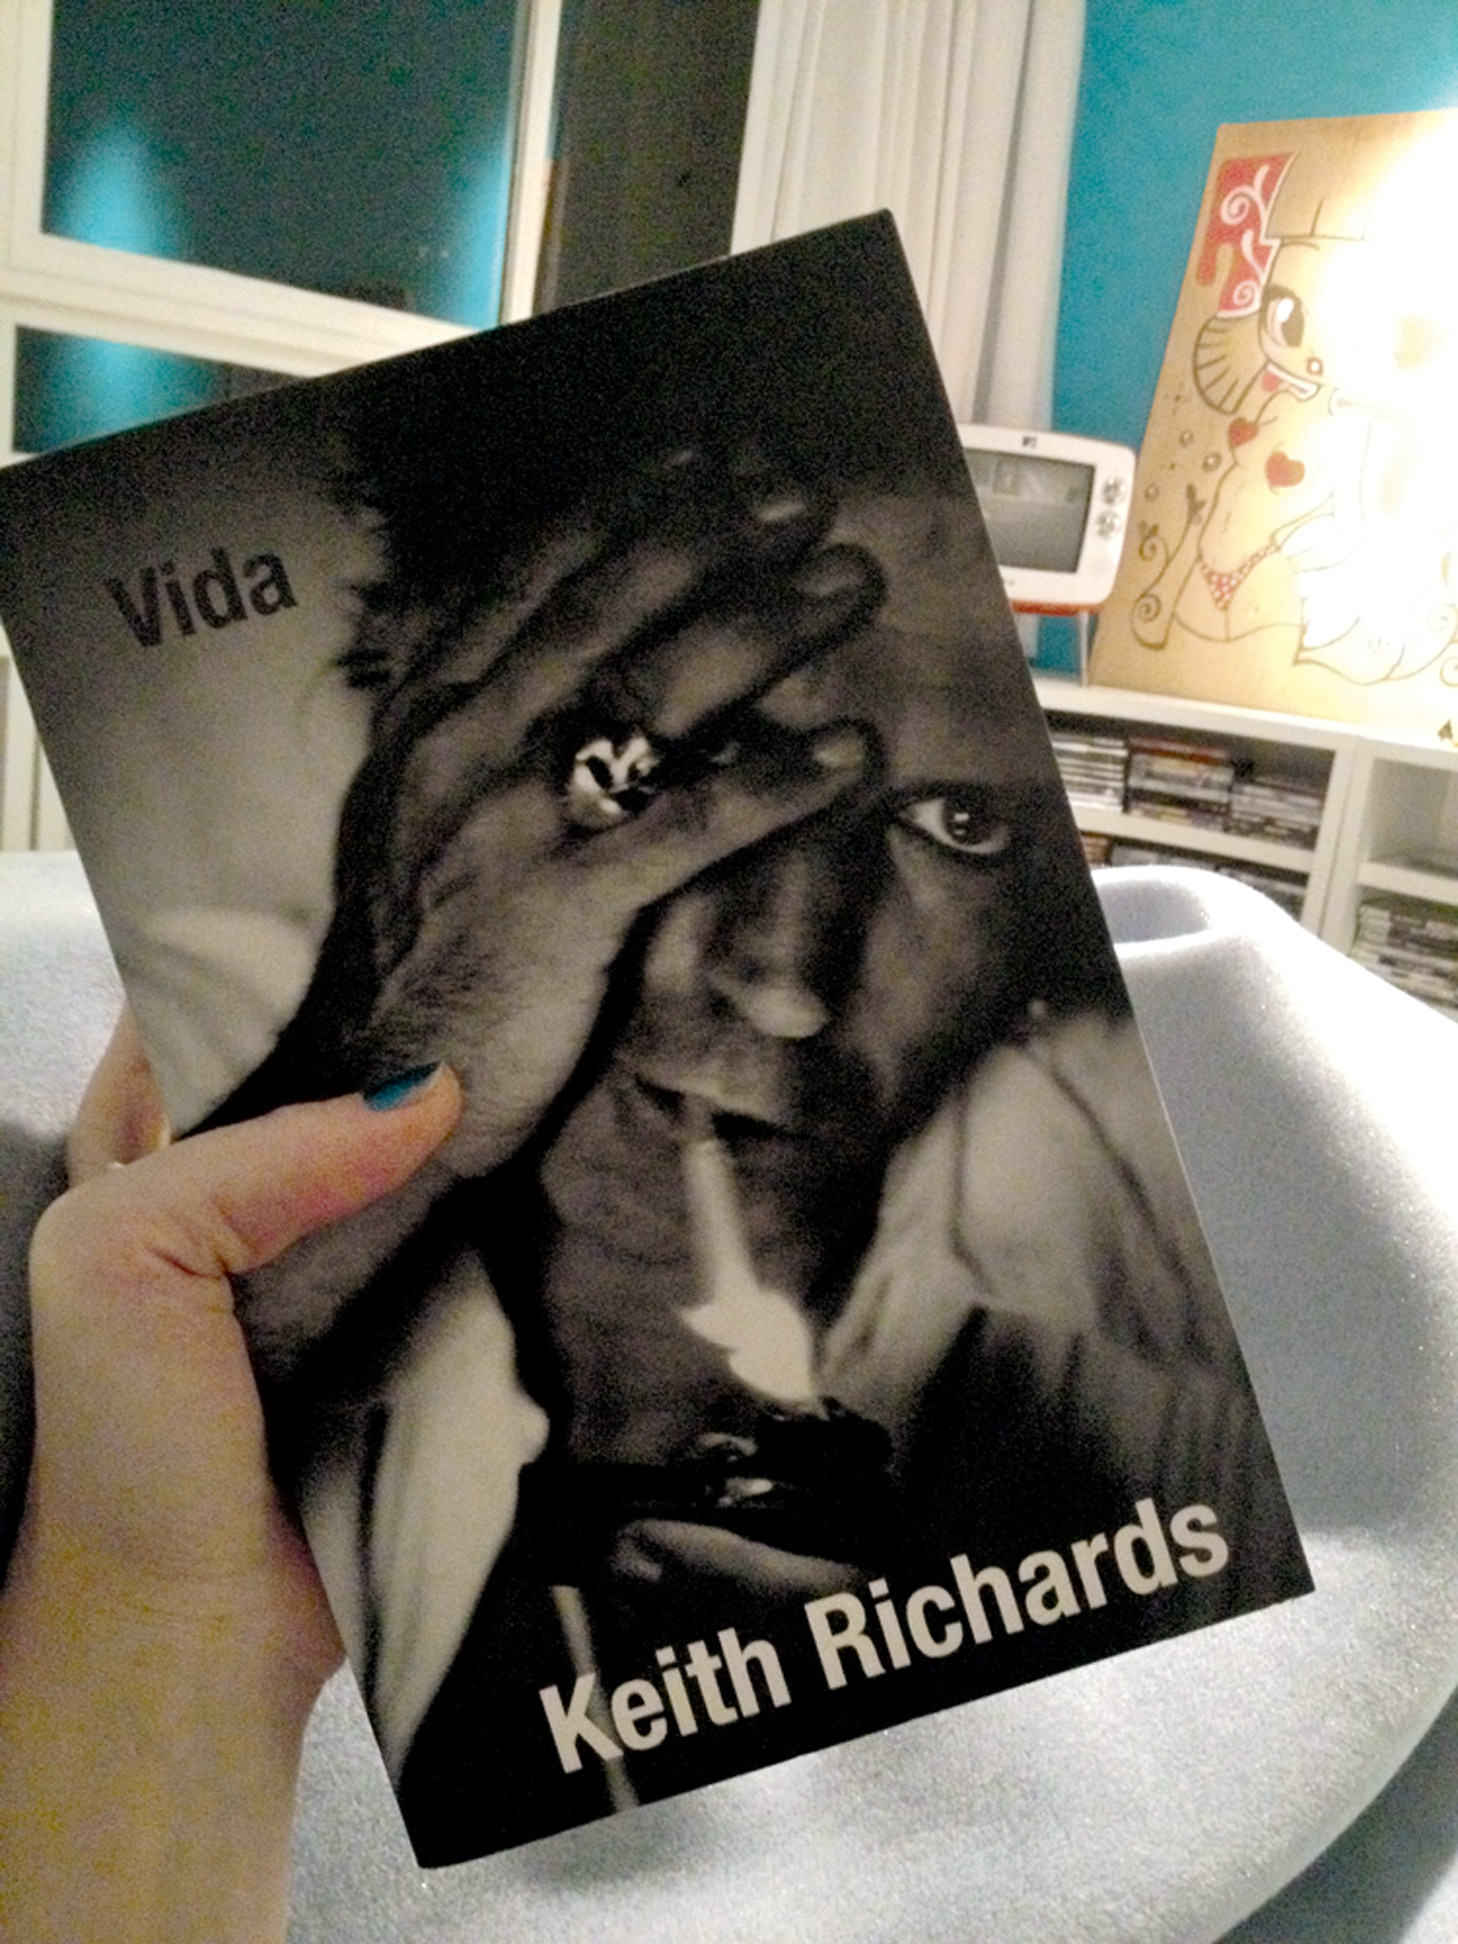 22h50 -  À noite, acalmo a mente com um bom livro. Estou lendo Vida, a autobiografia de Keith Richards.”